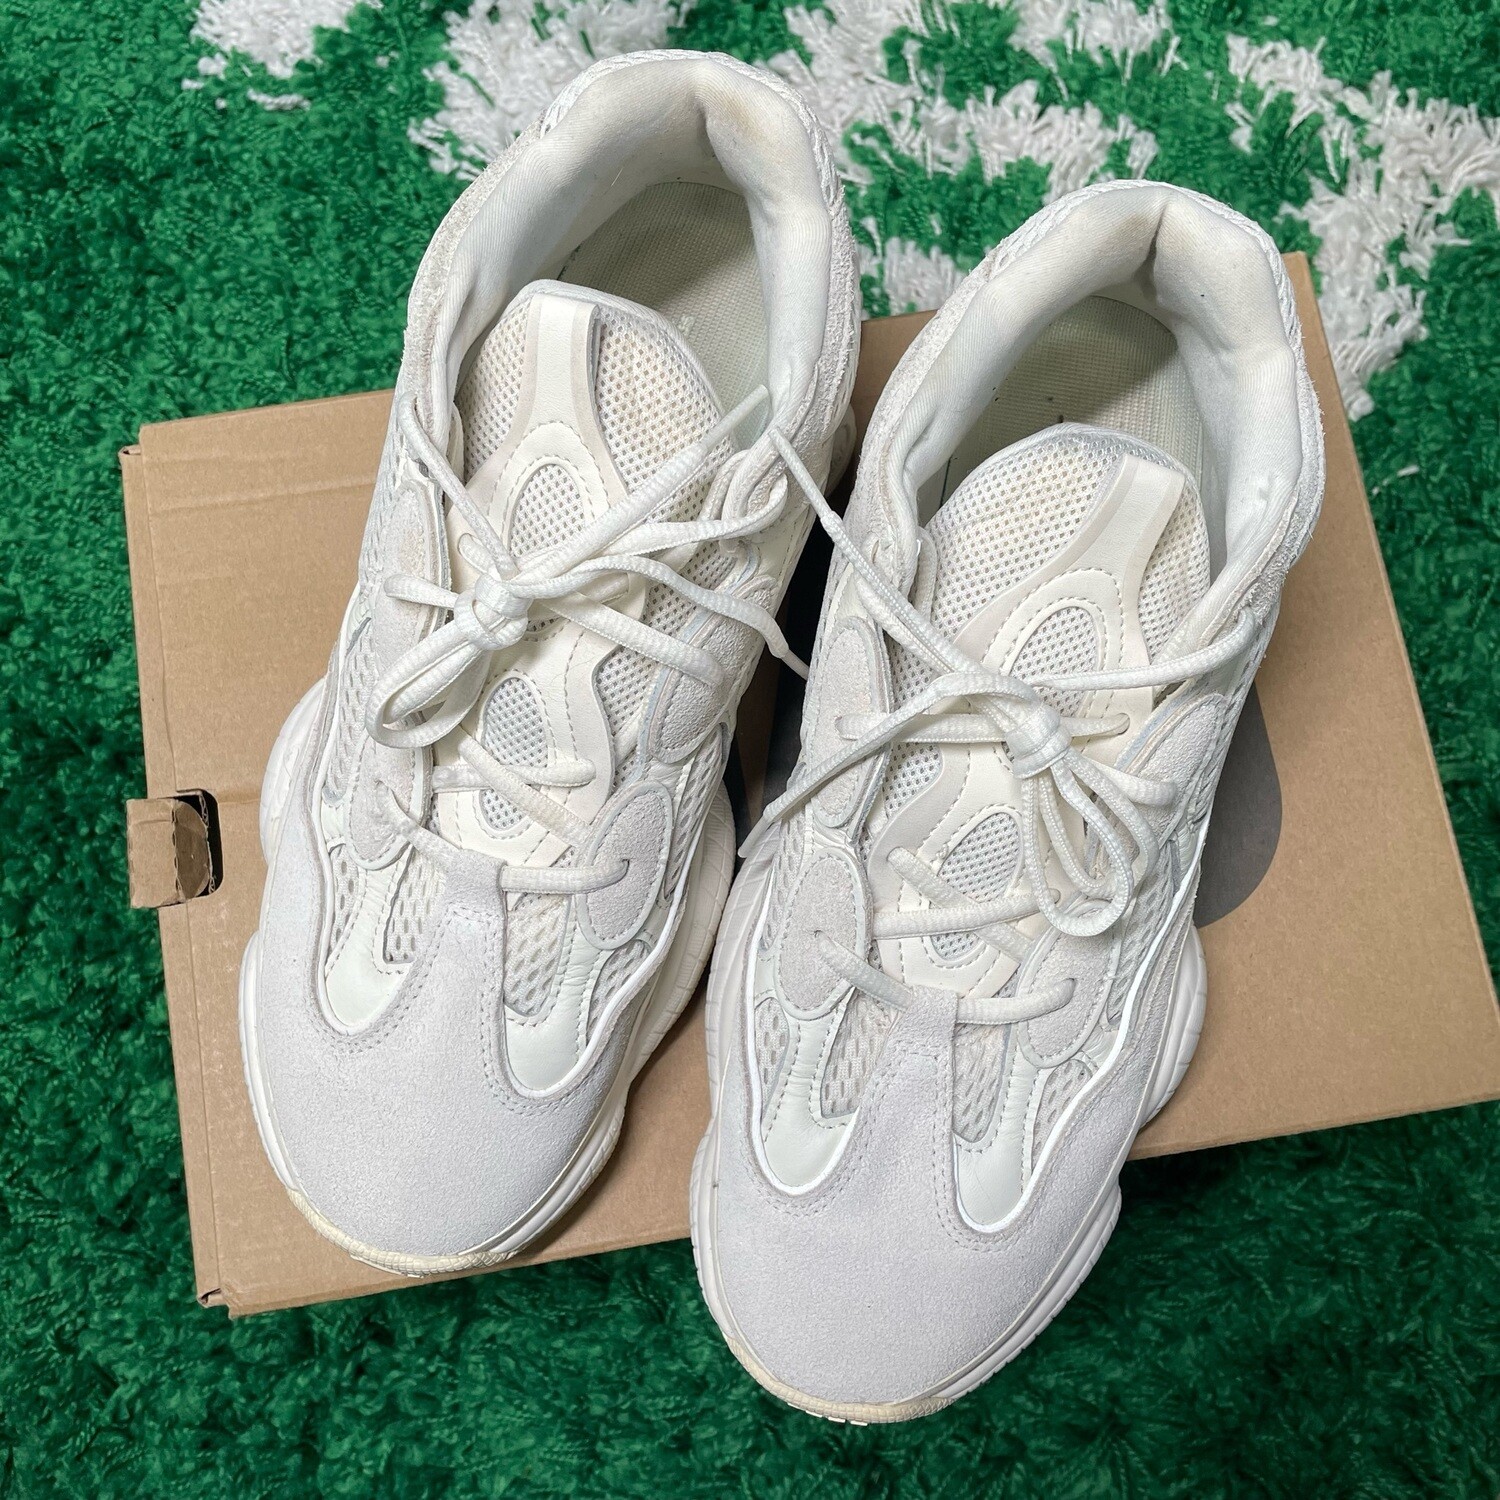 adidas Yeezy 500 Bone White Size 10.5M/12W